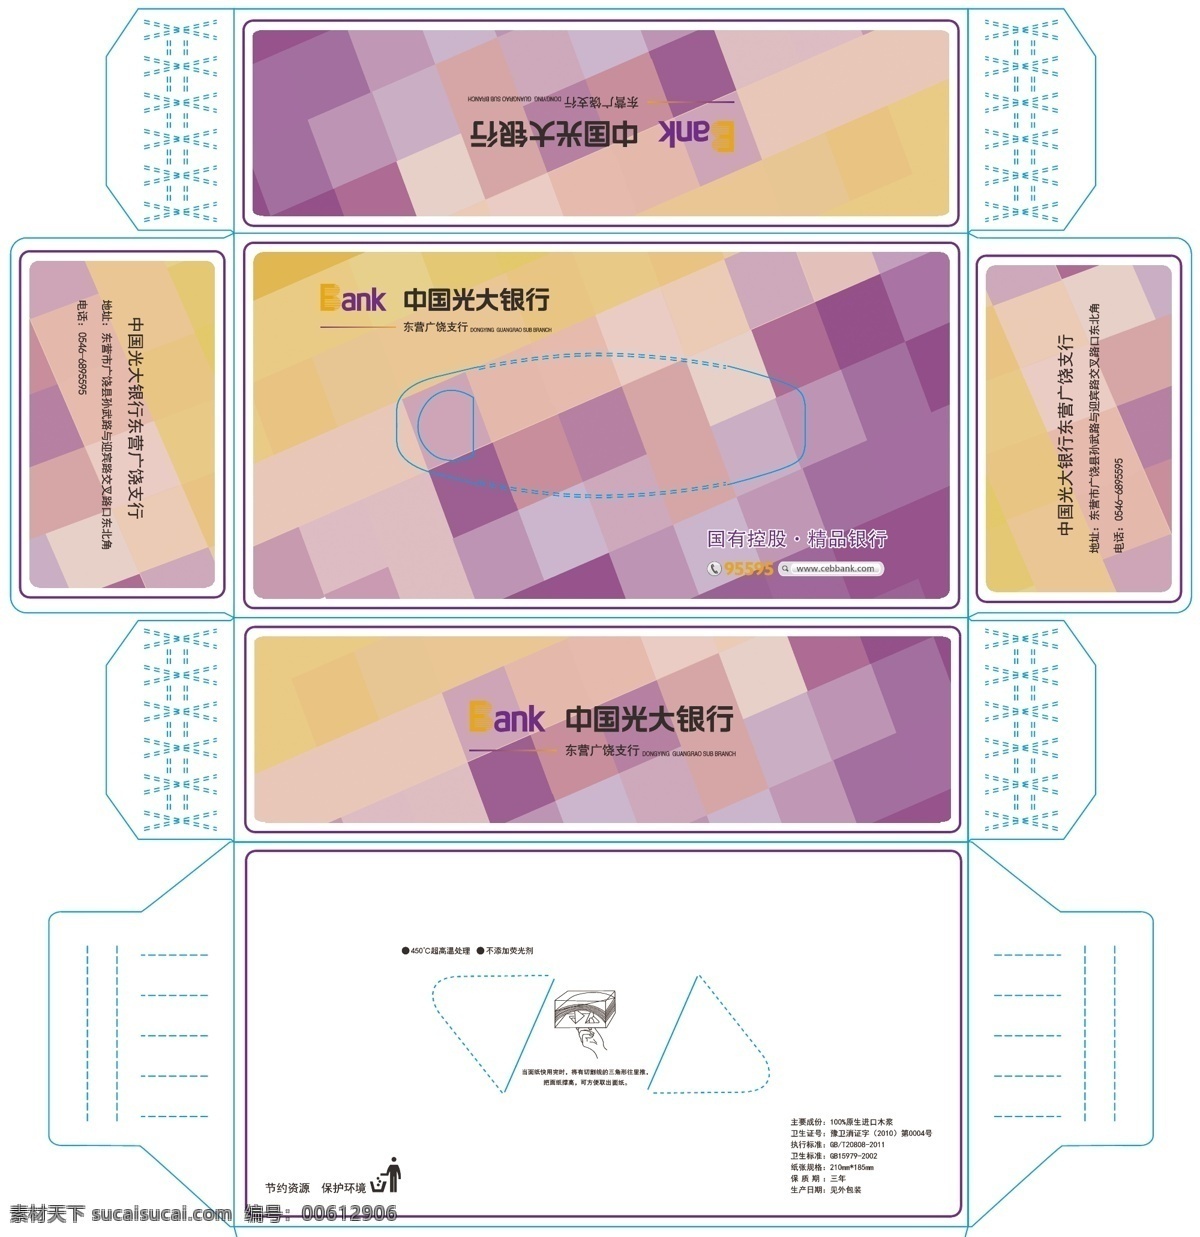 中国光大银行 抽 纸盒 展开 图 光大 银行 标志 几何底纹 抽纸盒 盒抽 模切线 包装设计